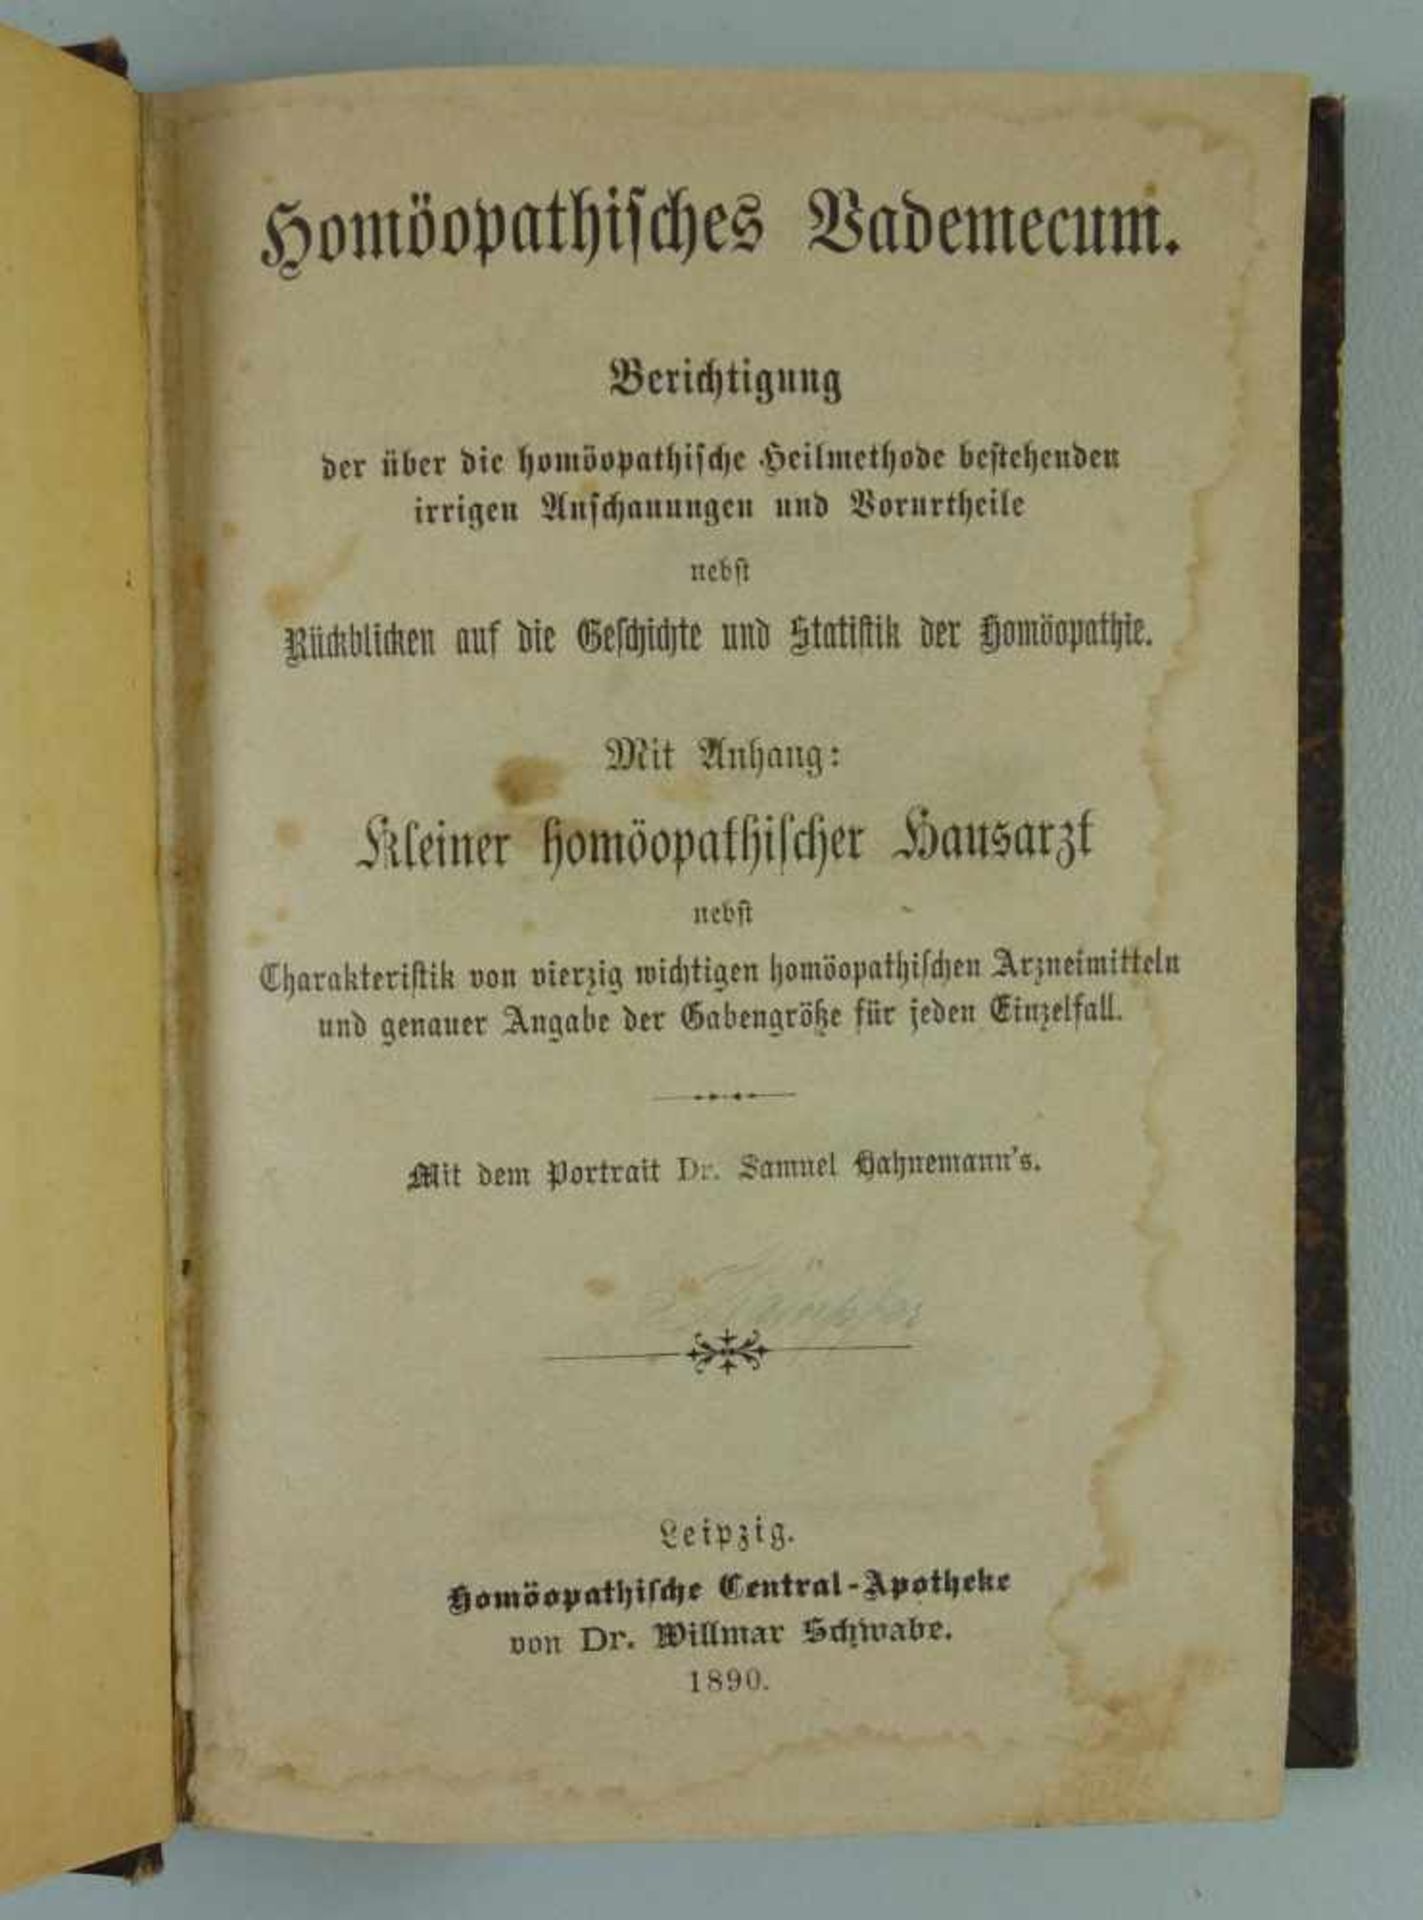 Homöopathisches Bademecum, 1890mit Anhang "Kleiner homöopatischer Hausarzt", Homöopatische Central-